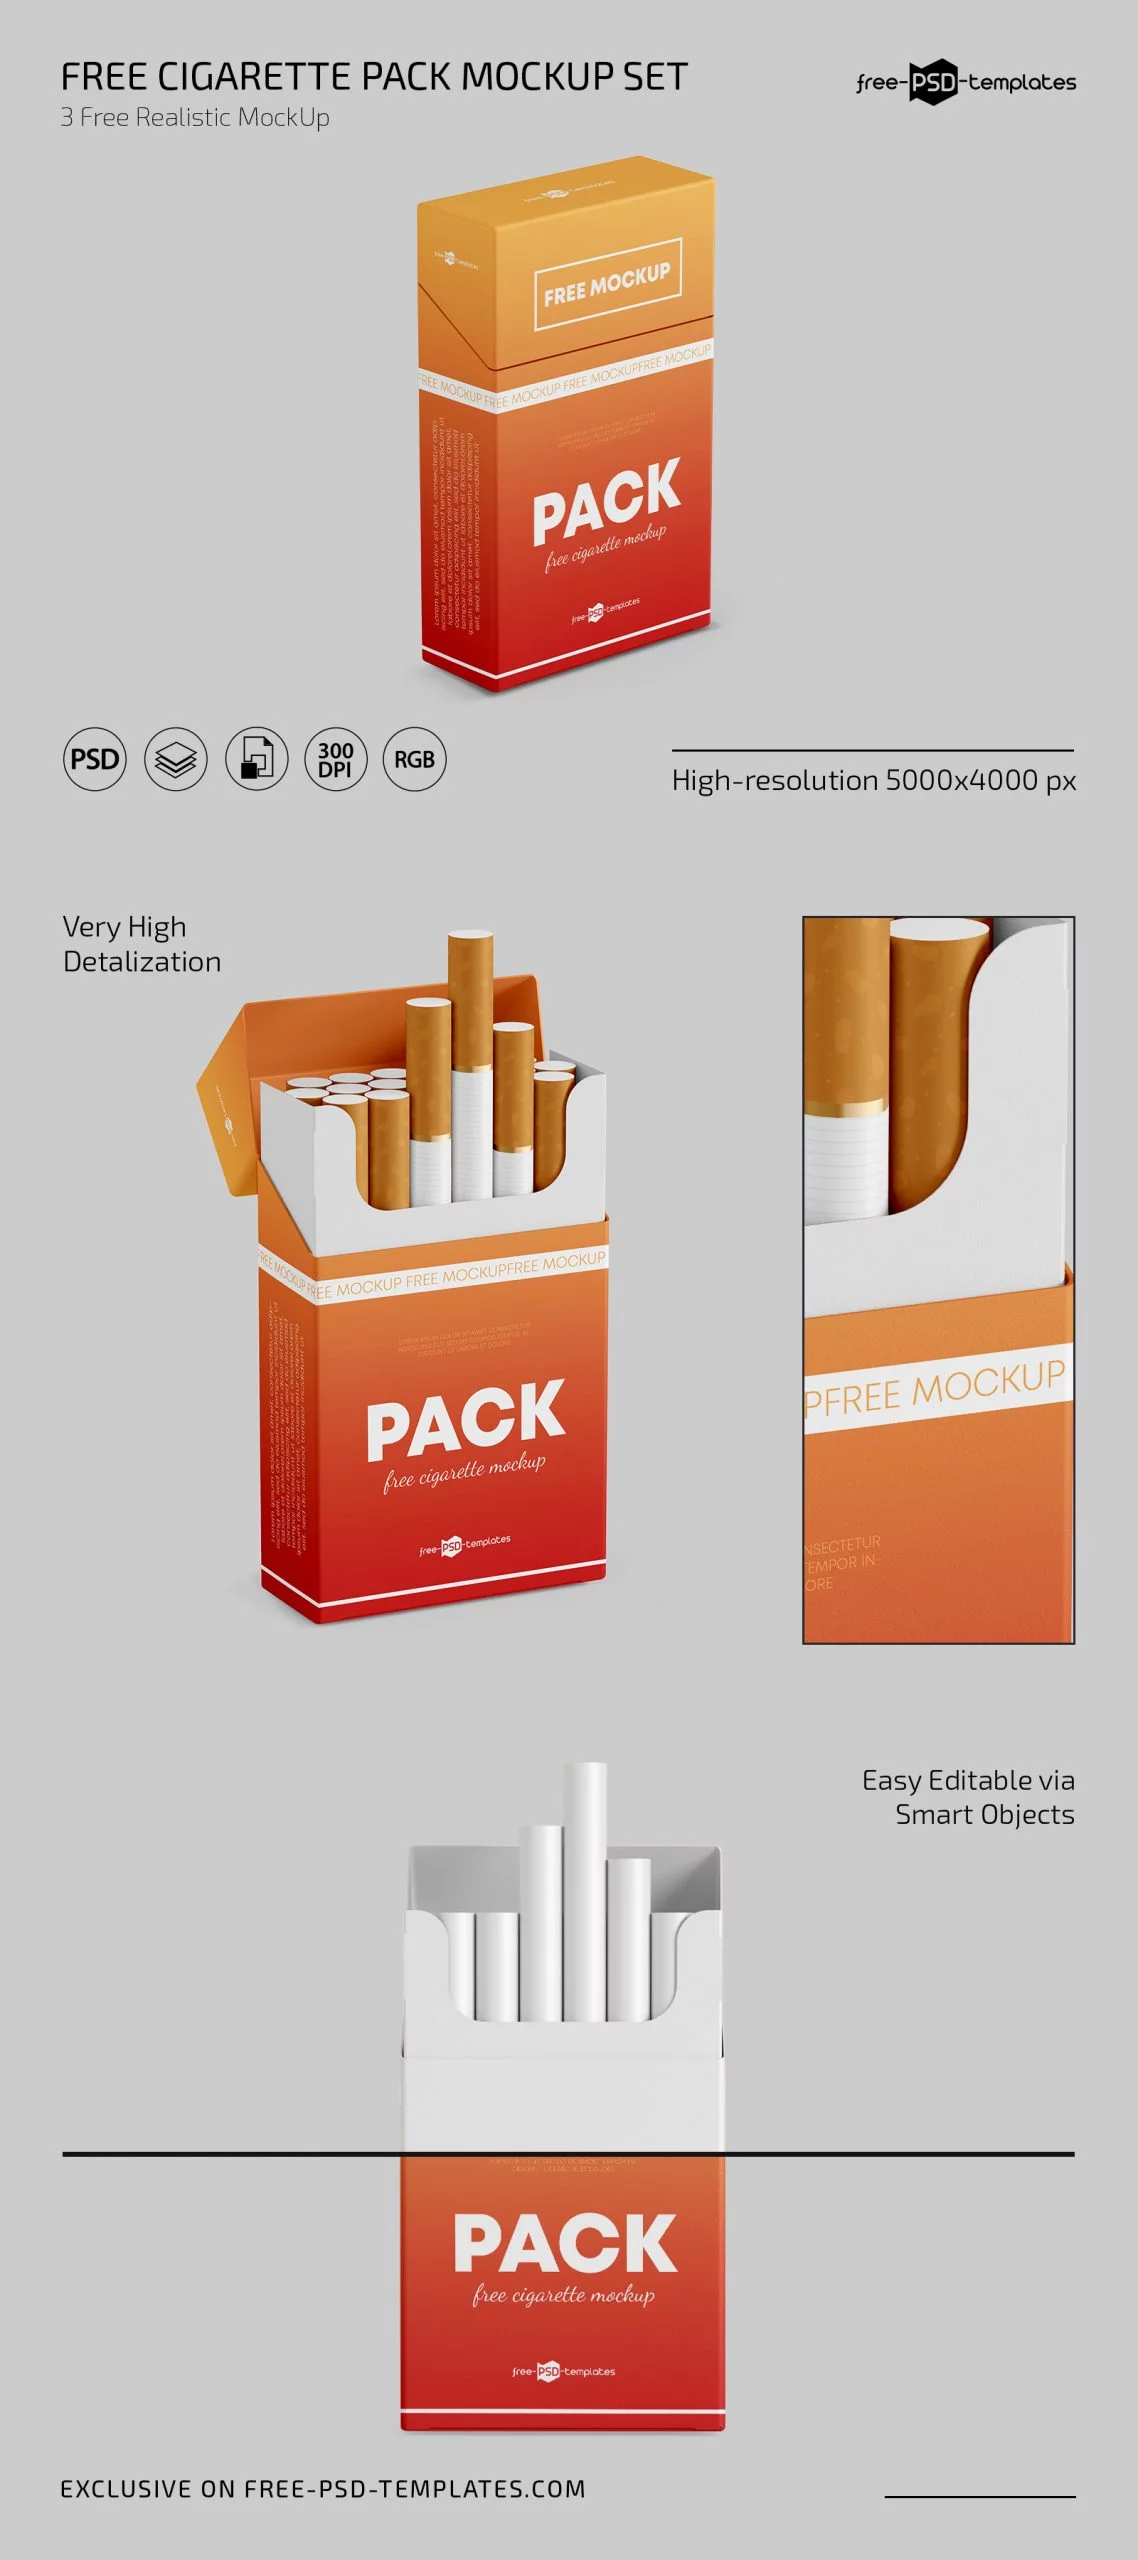 Free Cigarette Pack Mockup Set